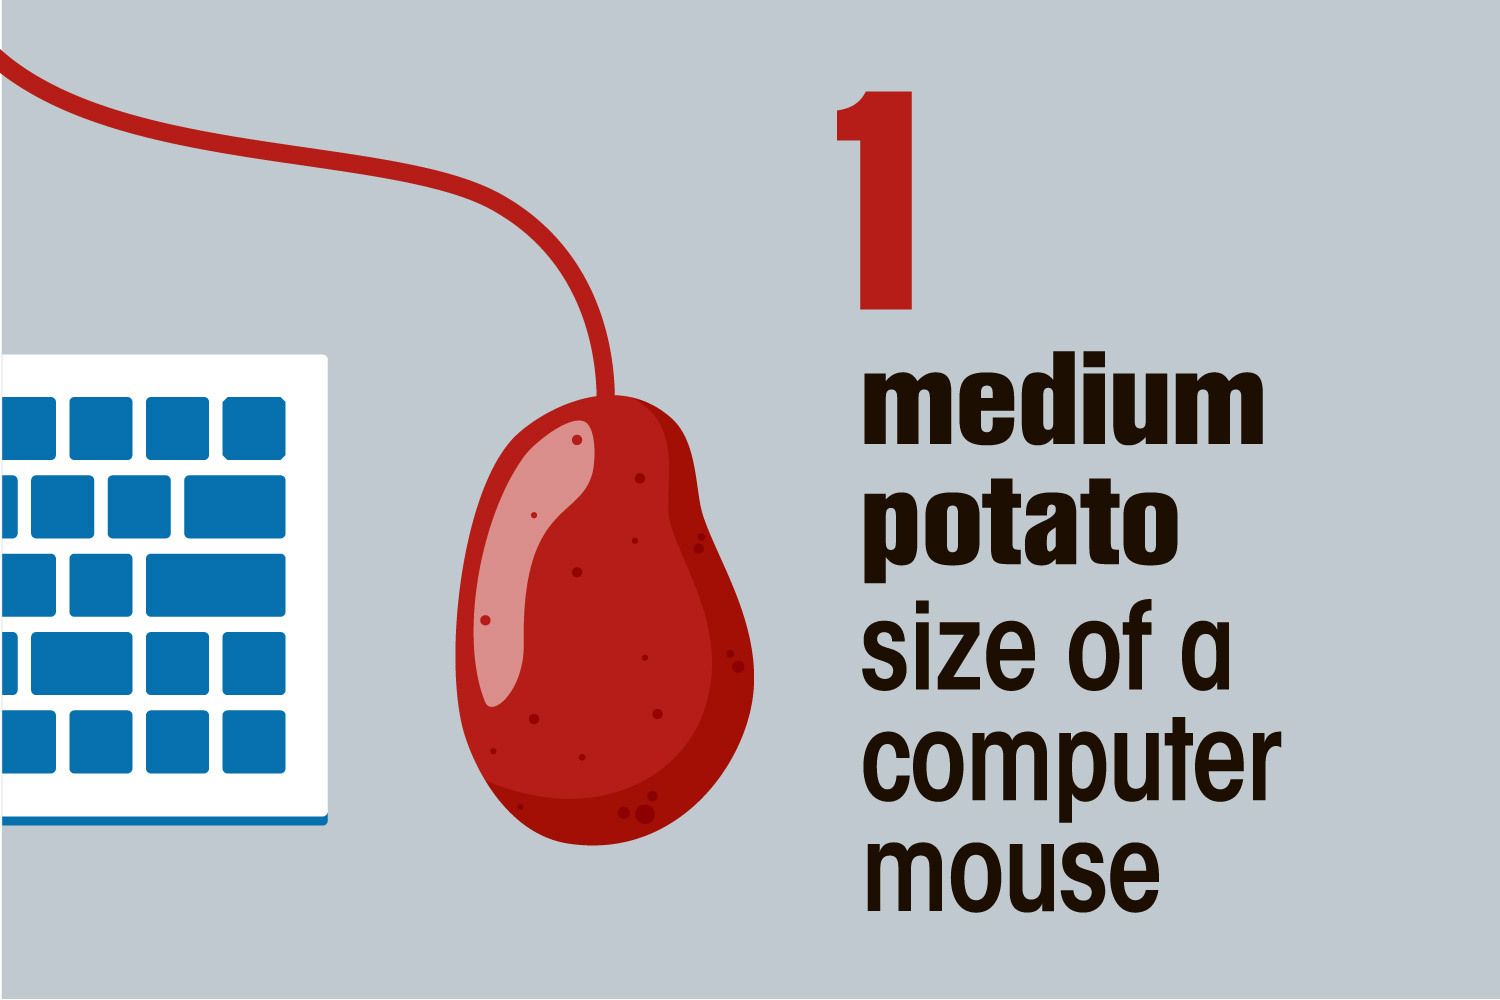 Sie sollten eine mittelgroße Kartoffel in der Größe einer Computermaus haben